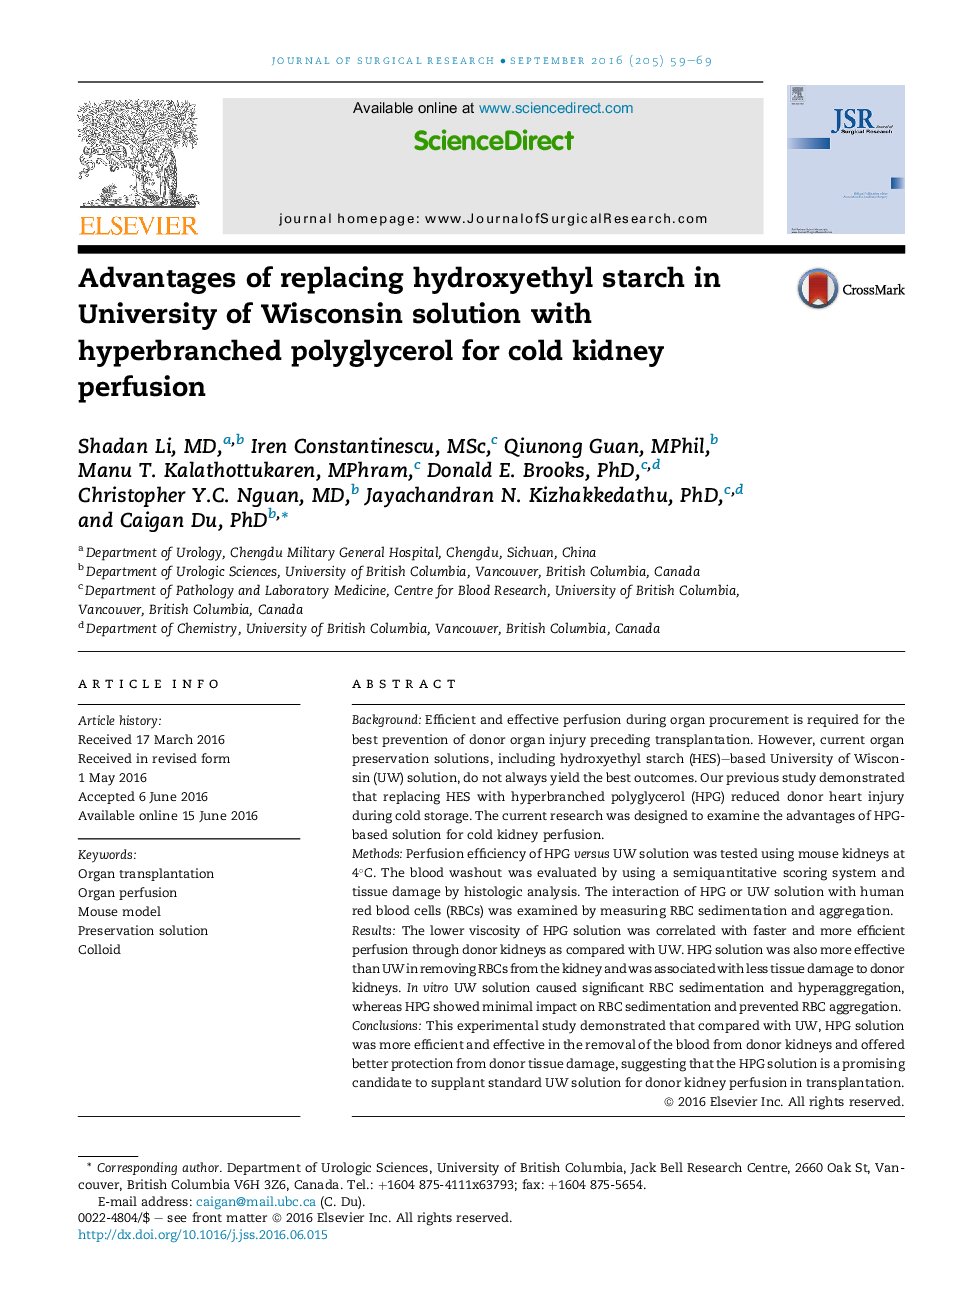 مزایای استفاده از جایگزین نشاسته هیدروکسی اتیل در محلول دانشگاه ویسکانسین با پلی گلیسرول پرفیوژن برای پرفیوژن سرپایی 